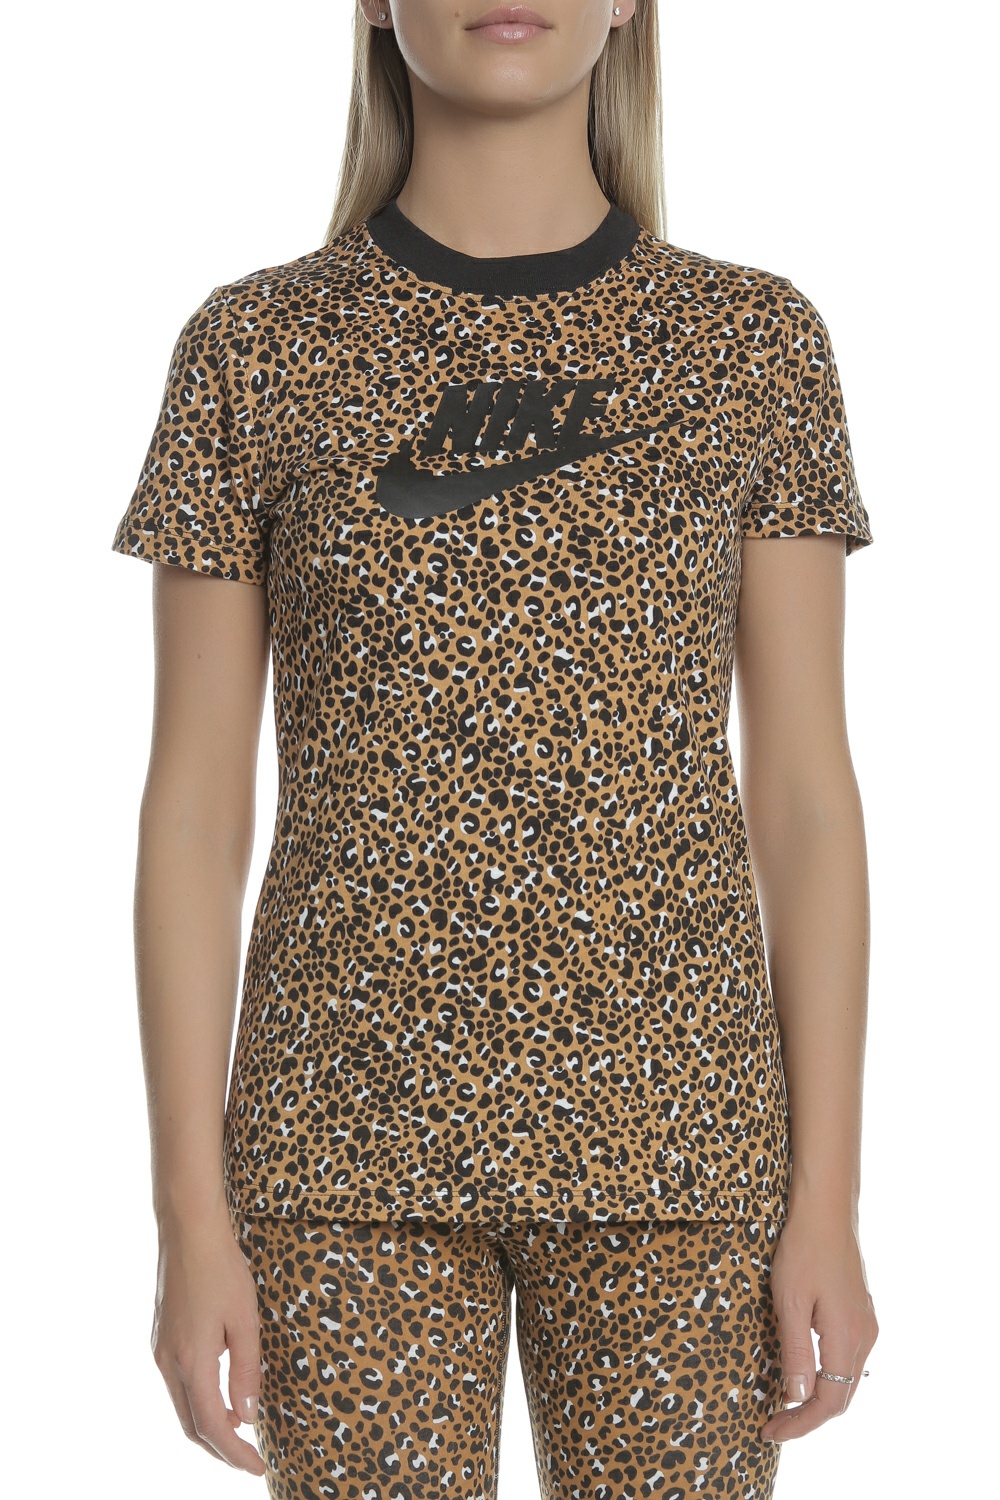 Γυναικεία/Ρούχα/Αθλητικά/T-shirt-Τοπ NIKE - Γυναικείο t-shirt NIKE NSW καφέ μαύρο